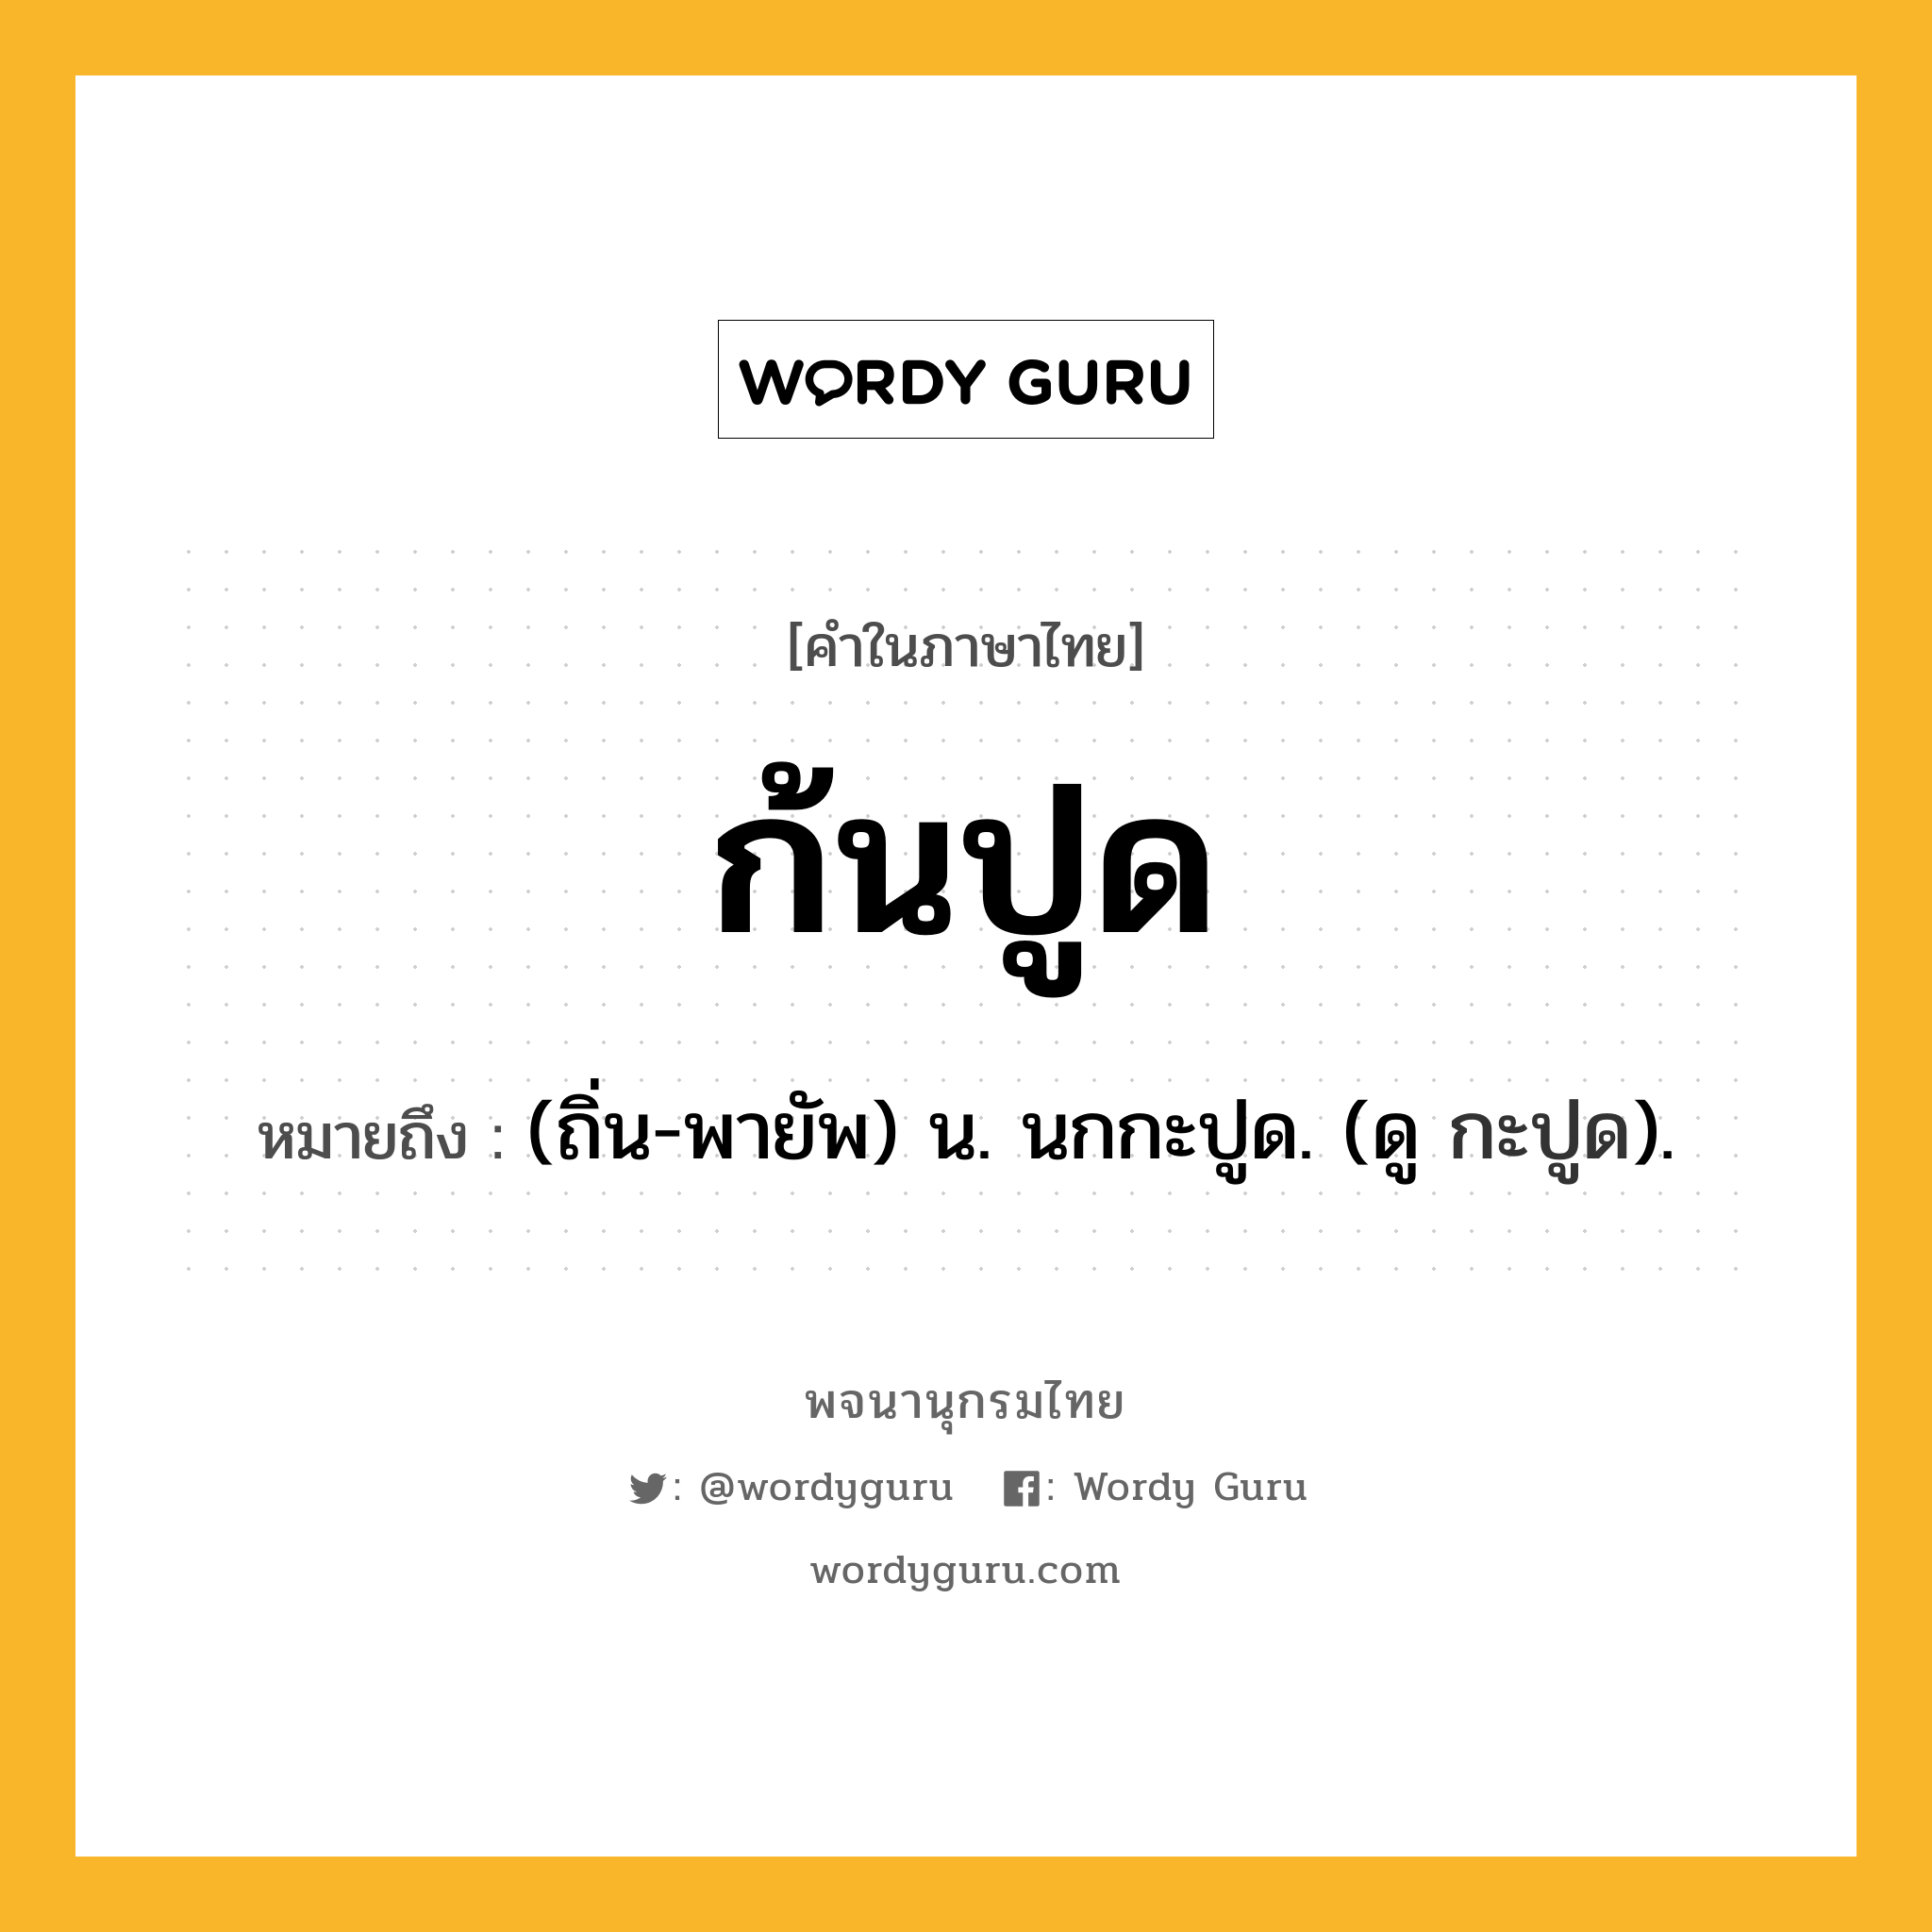 ก้นปูด หมายถึงอะไร?, คำในภาษาไทย ก้นปูด หมายถึง (ถิ่น-พายัพ) น. นกกะปูด. (ดู กะปูด).